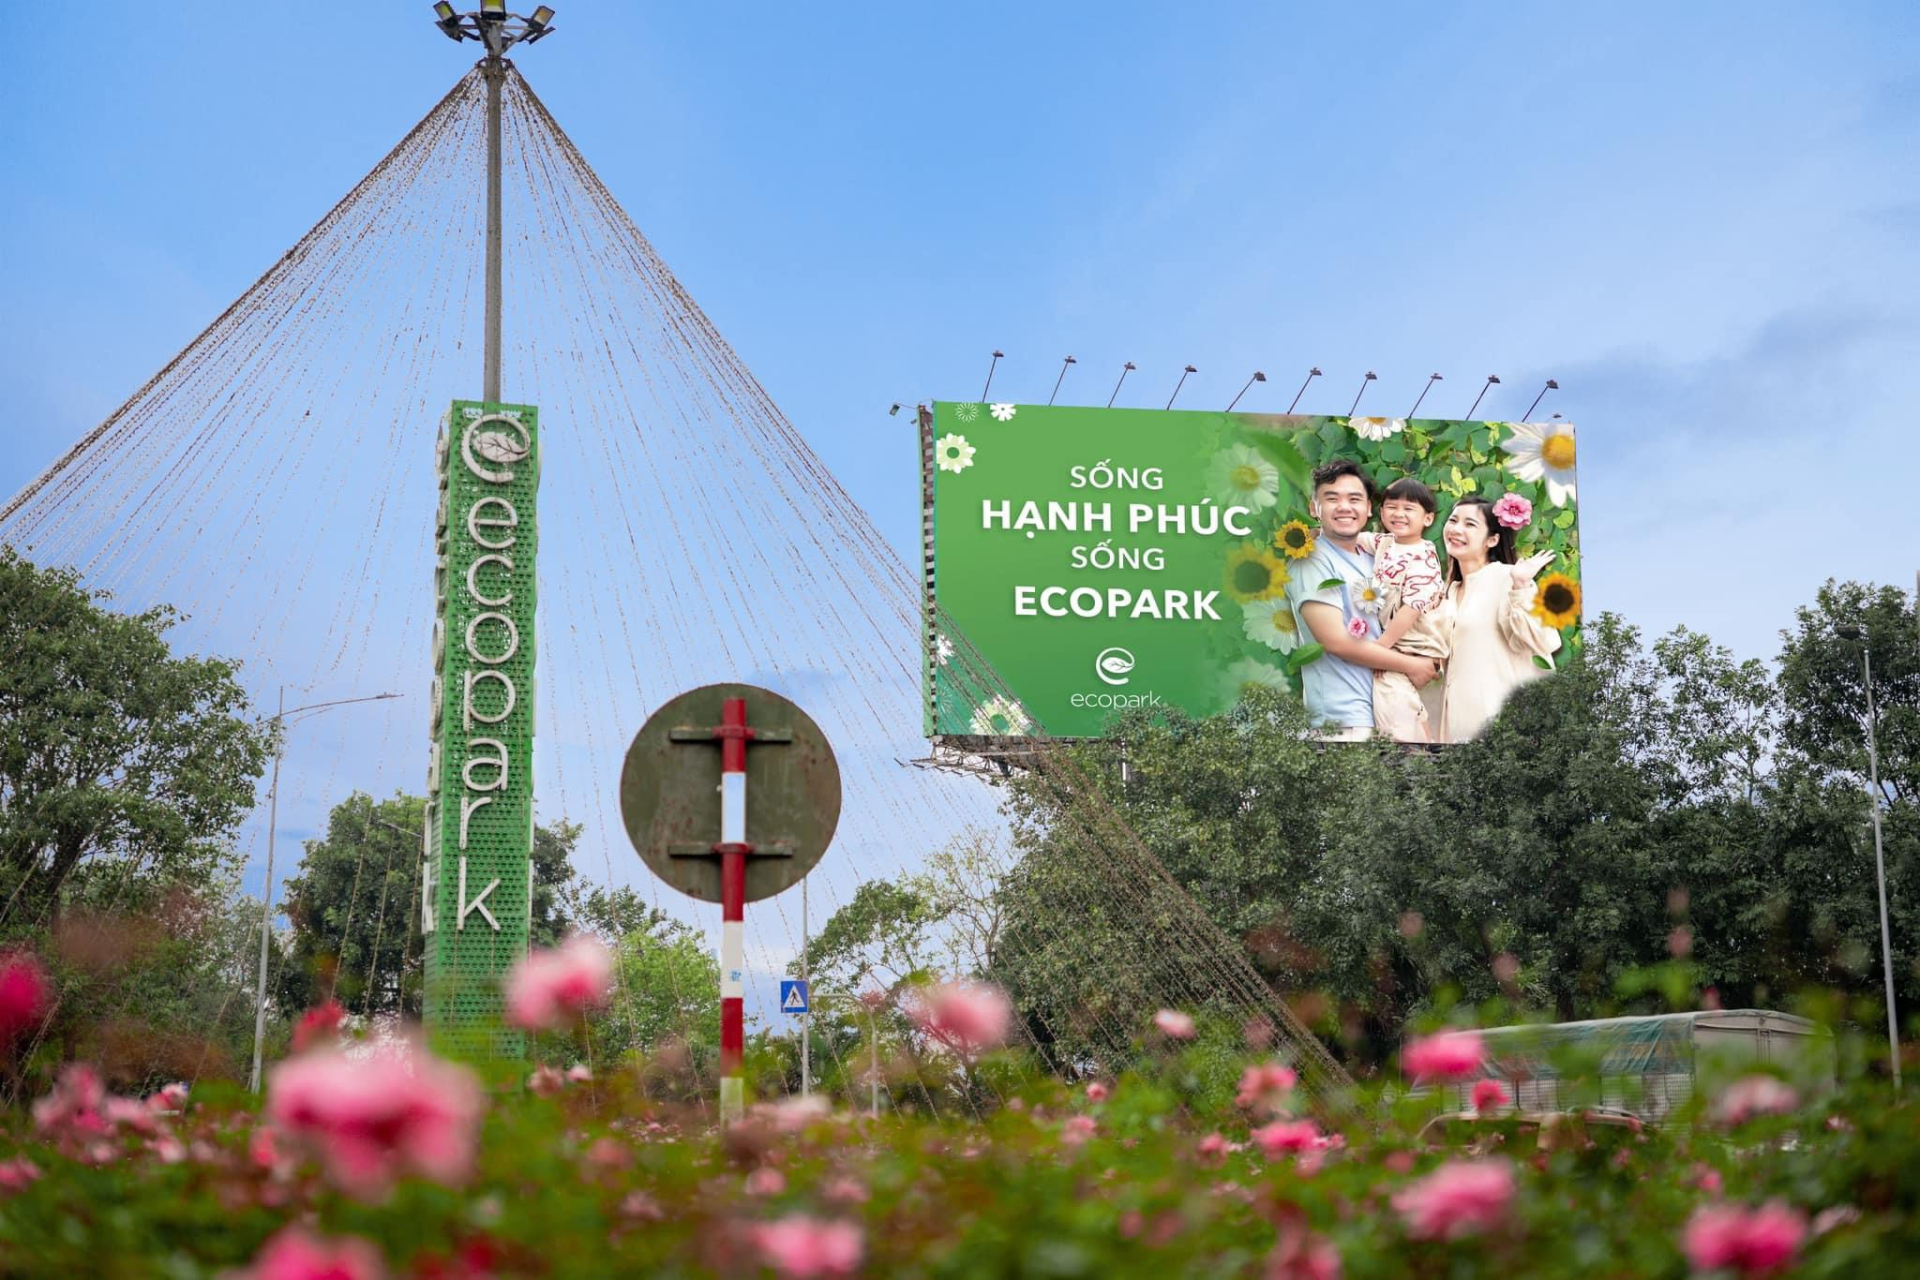 Ecopark không chỉ là nơi để ở mà còn là nơi để tận hưởng cuộc sống cùng những người thân yêu. (Ảnh: Ecopark)